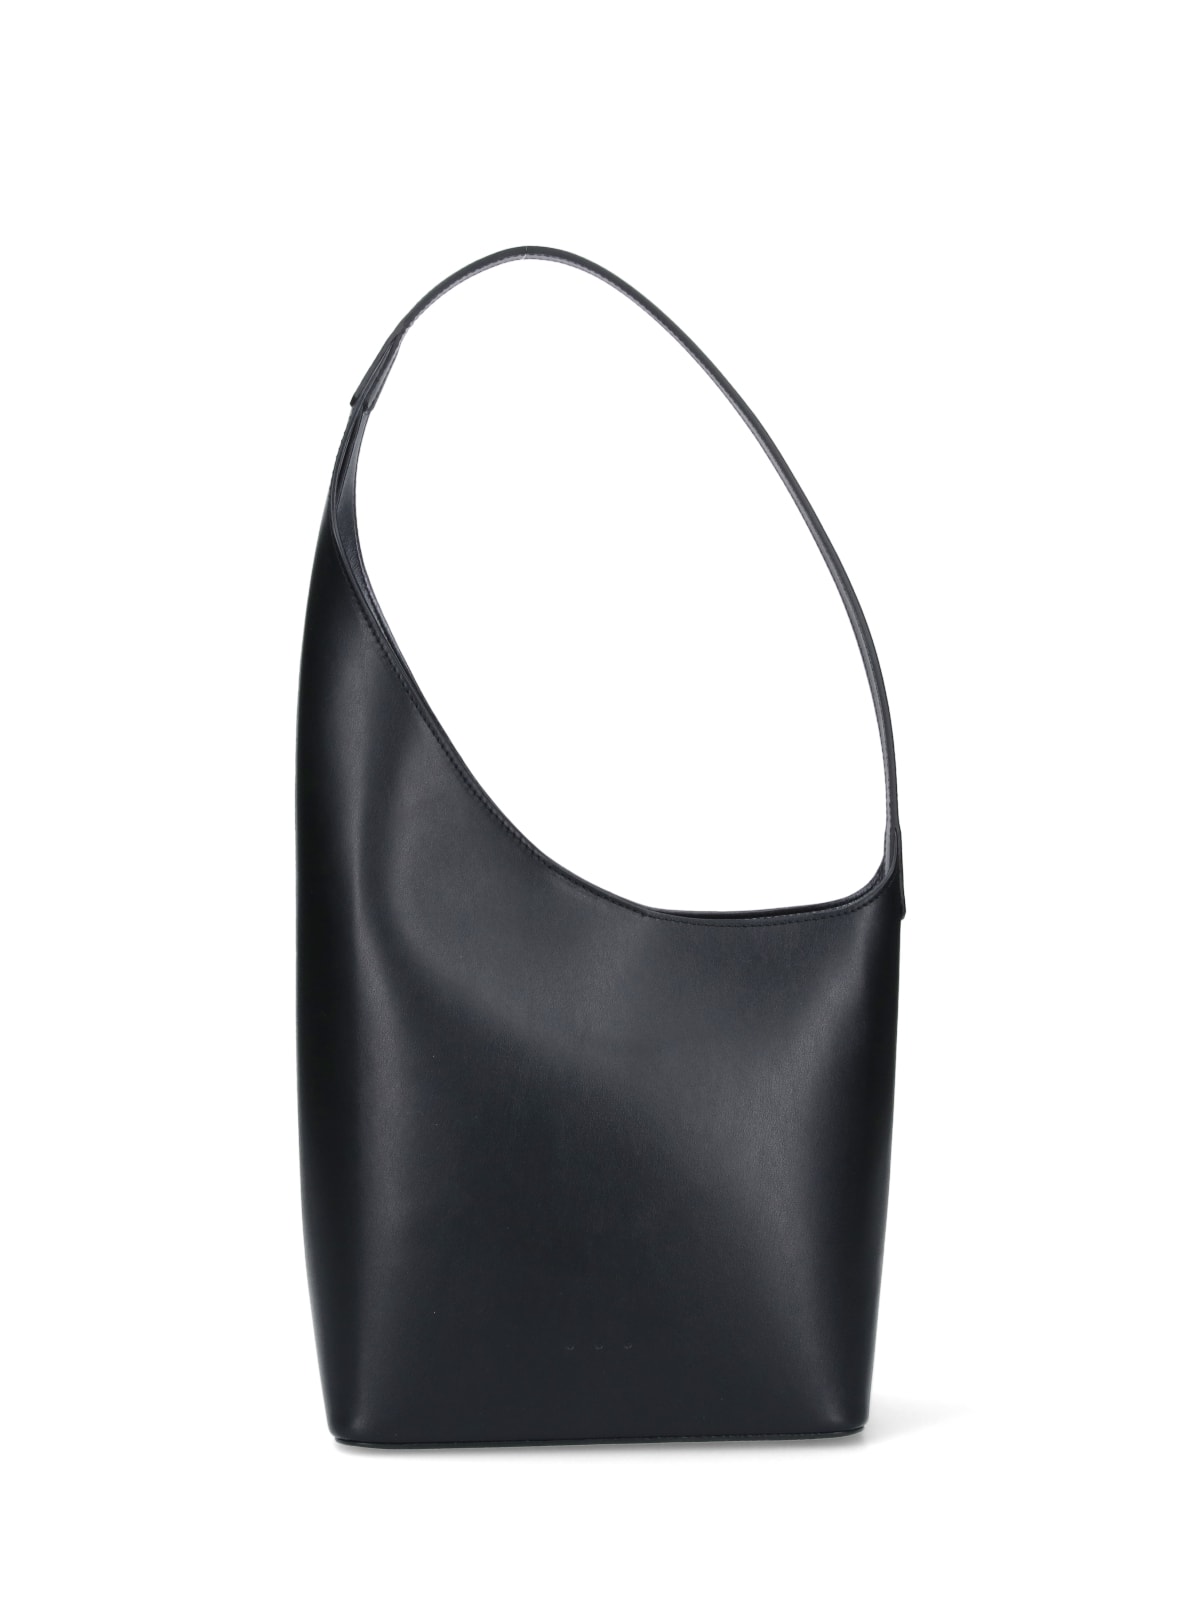 Aesther Ekme Sway Baguette Bag in Black